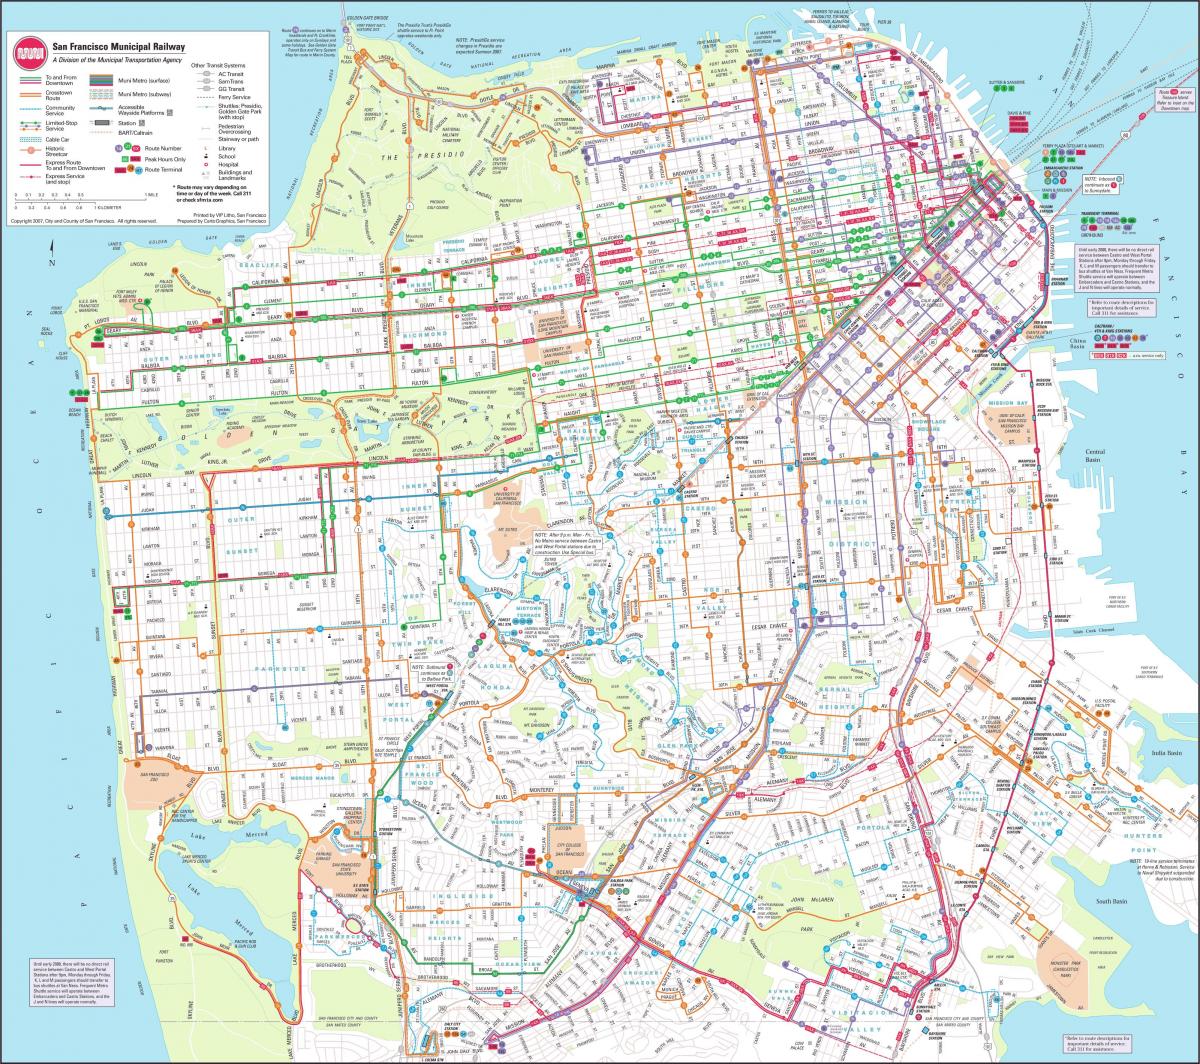 Harta e San Franciskos komunale hekurudhor